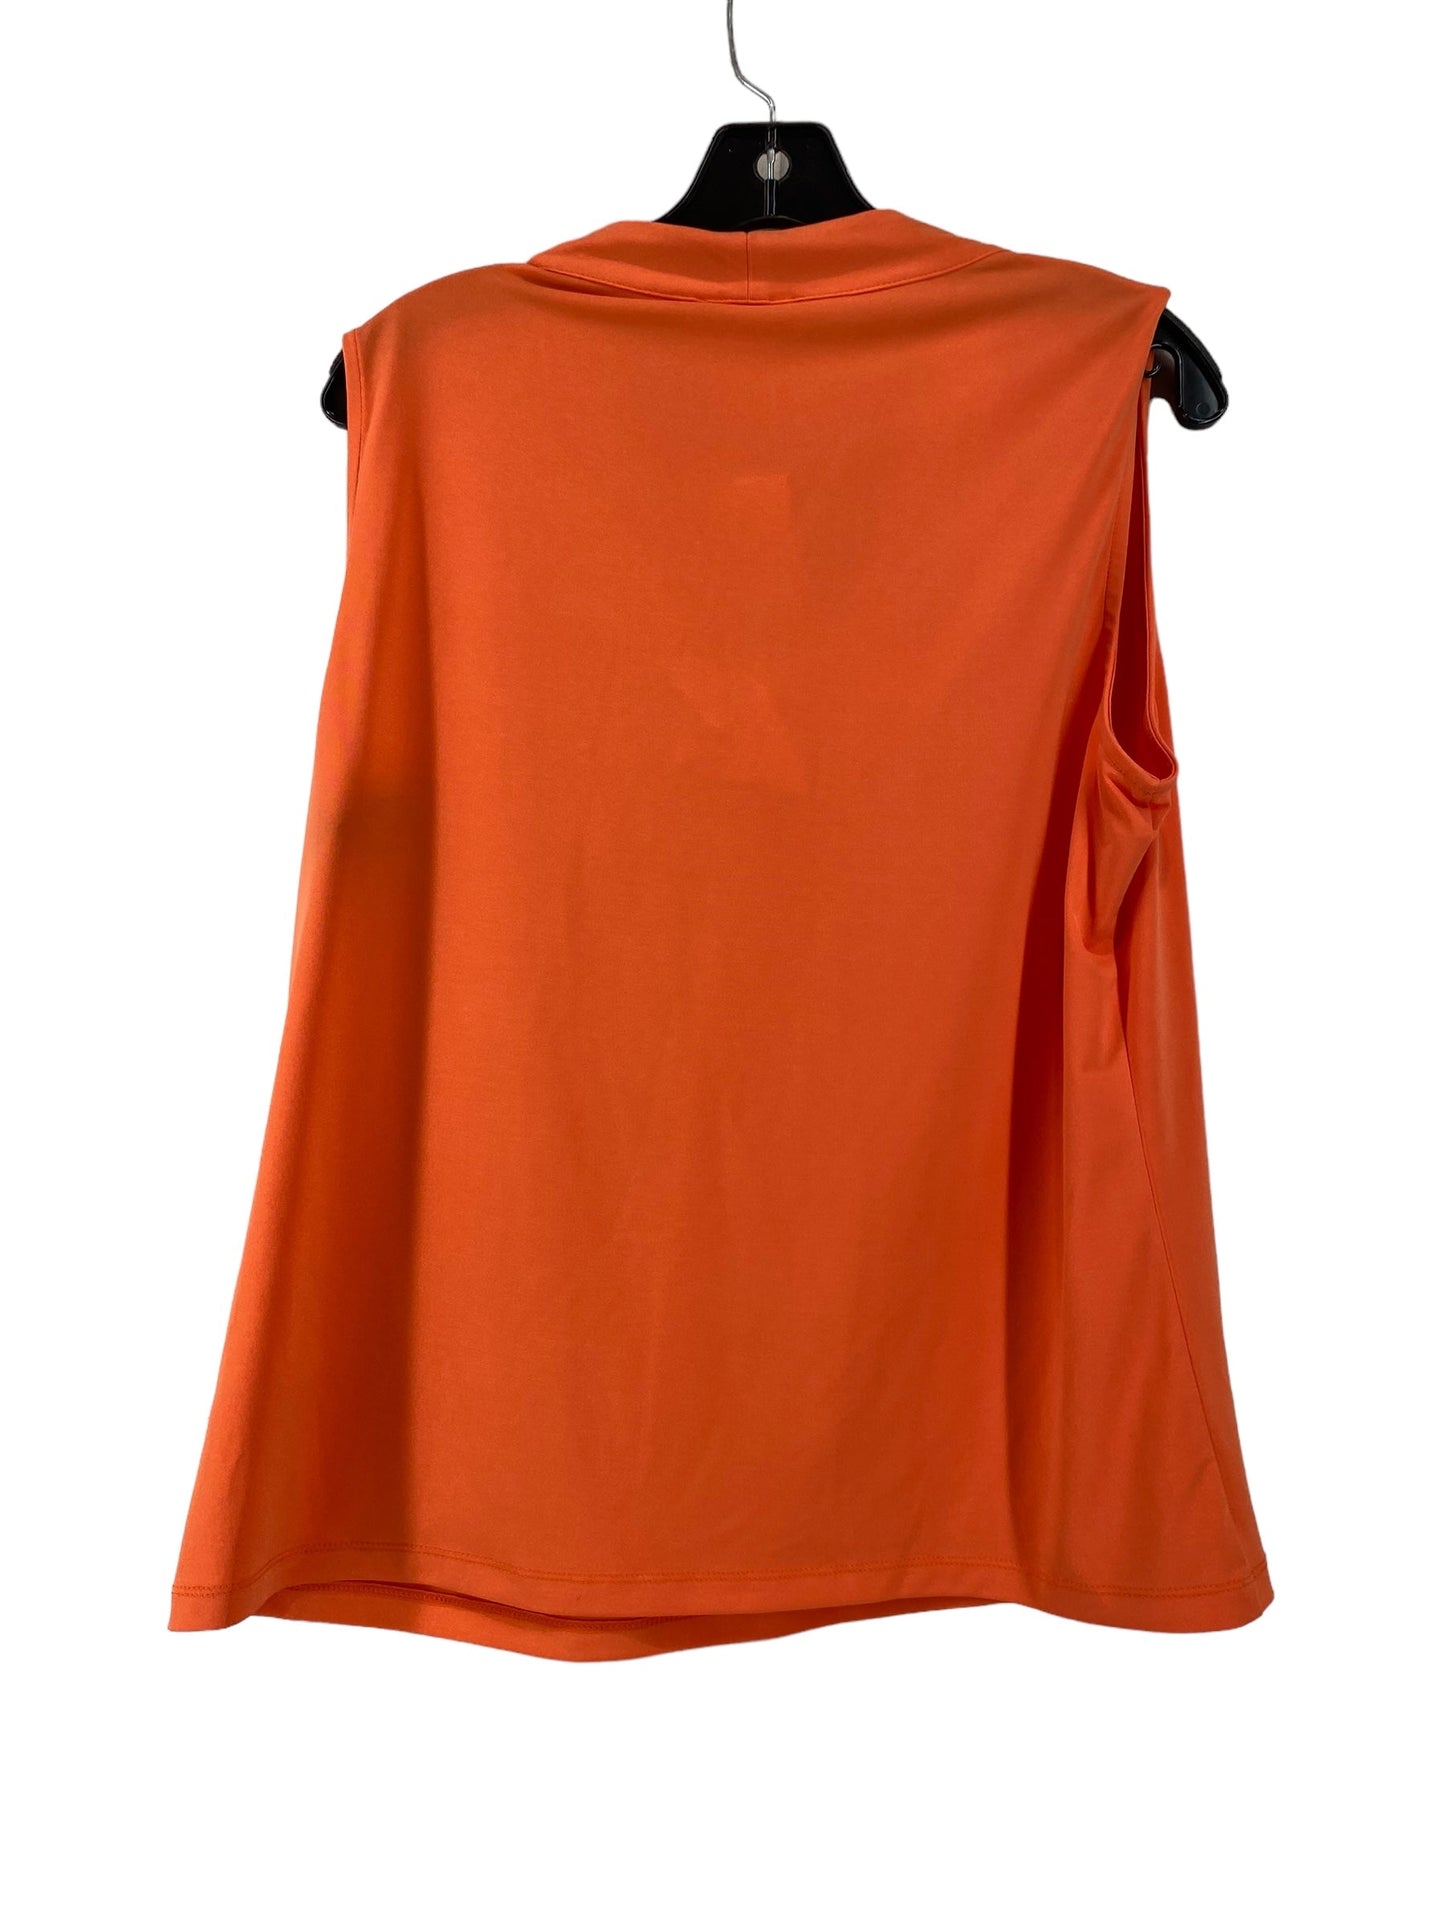 Orange Top Sleeveless Calvin Klein, Size Xl